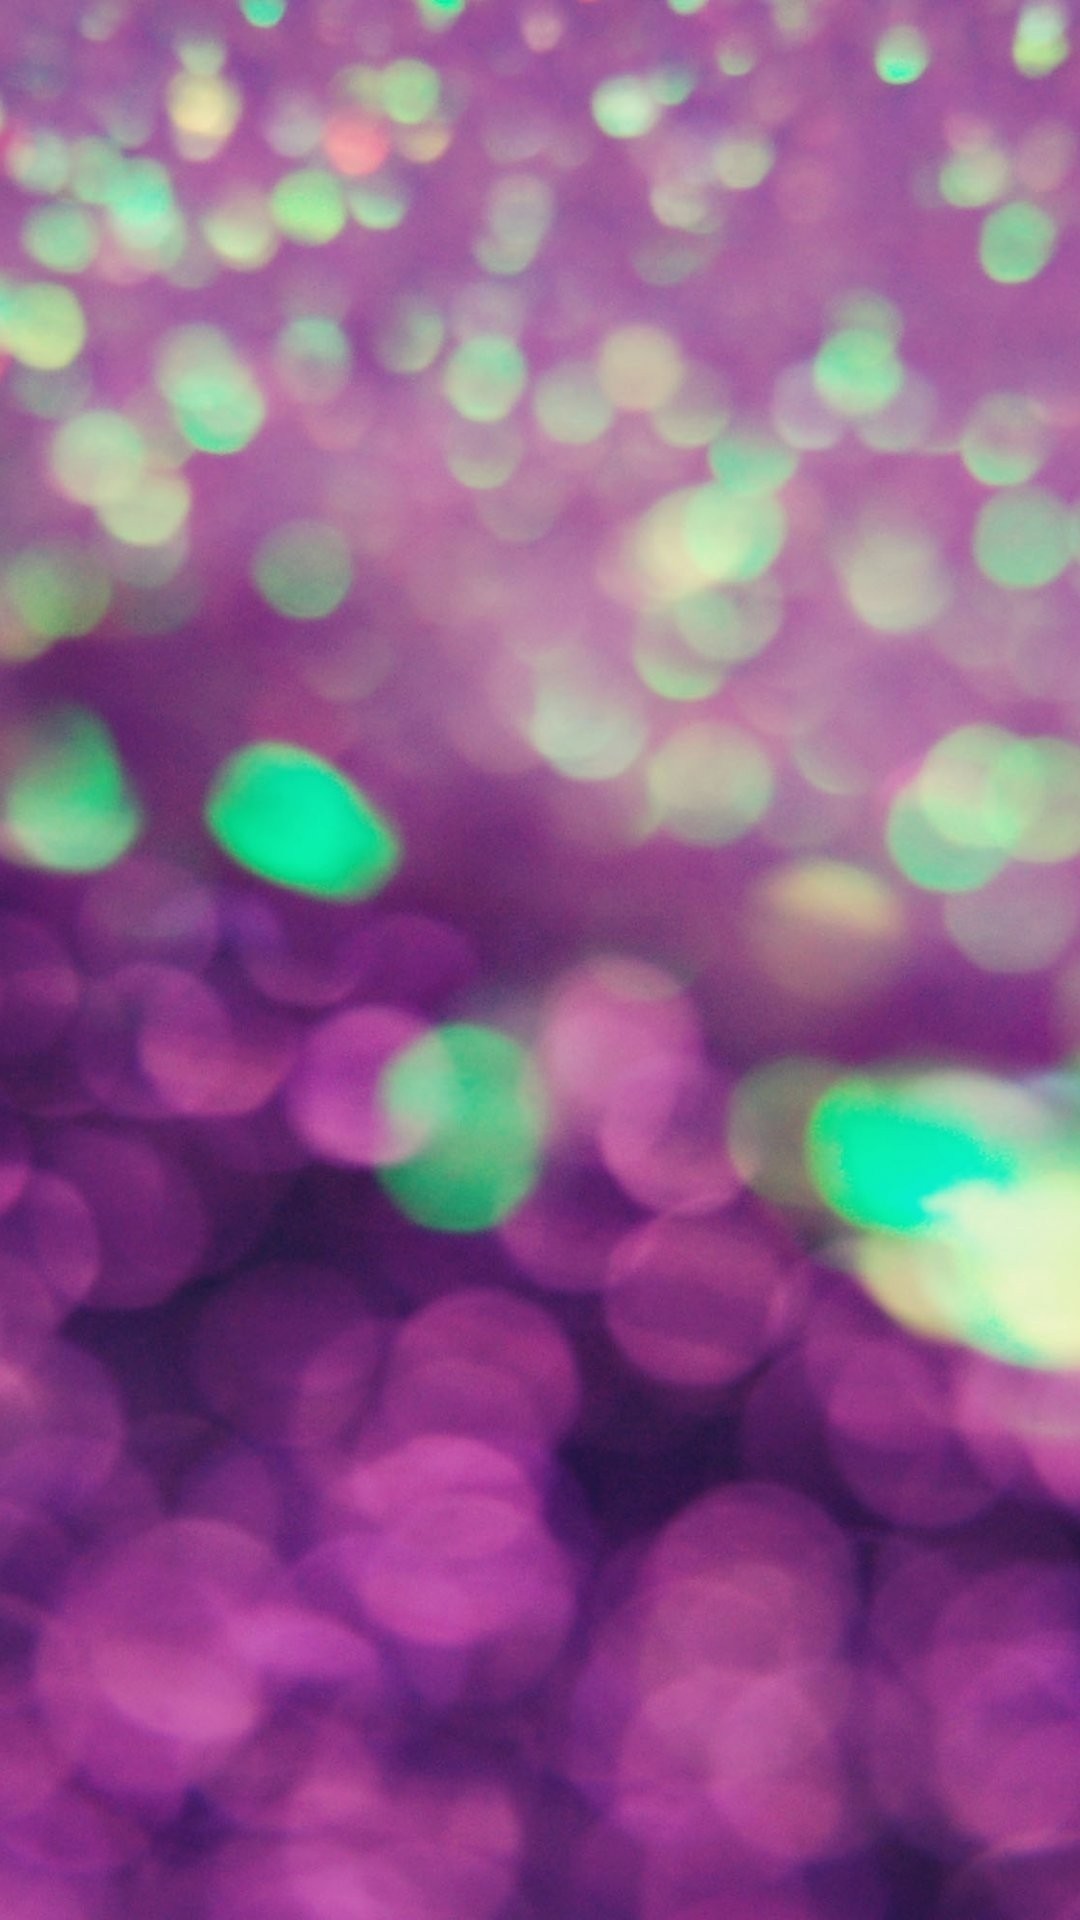 iphone 6 1080pのhd壁紙,緑,紫の,バイオレット,ピンク,ライラック